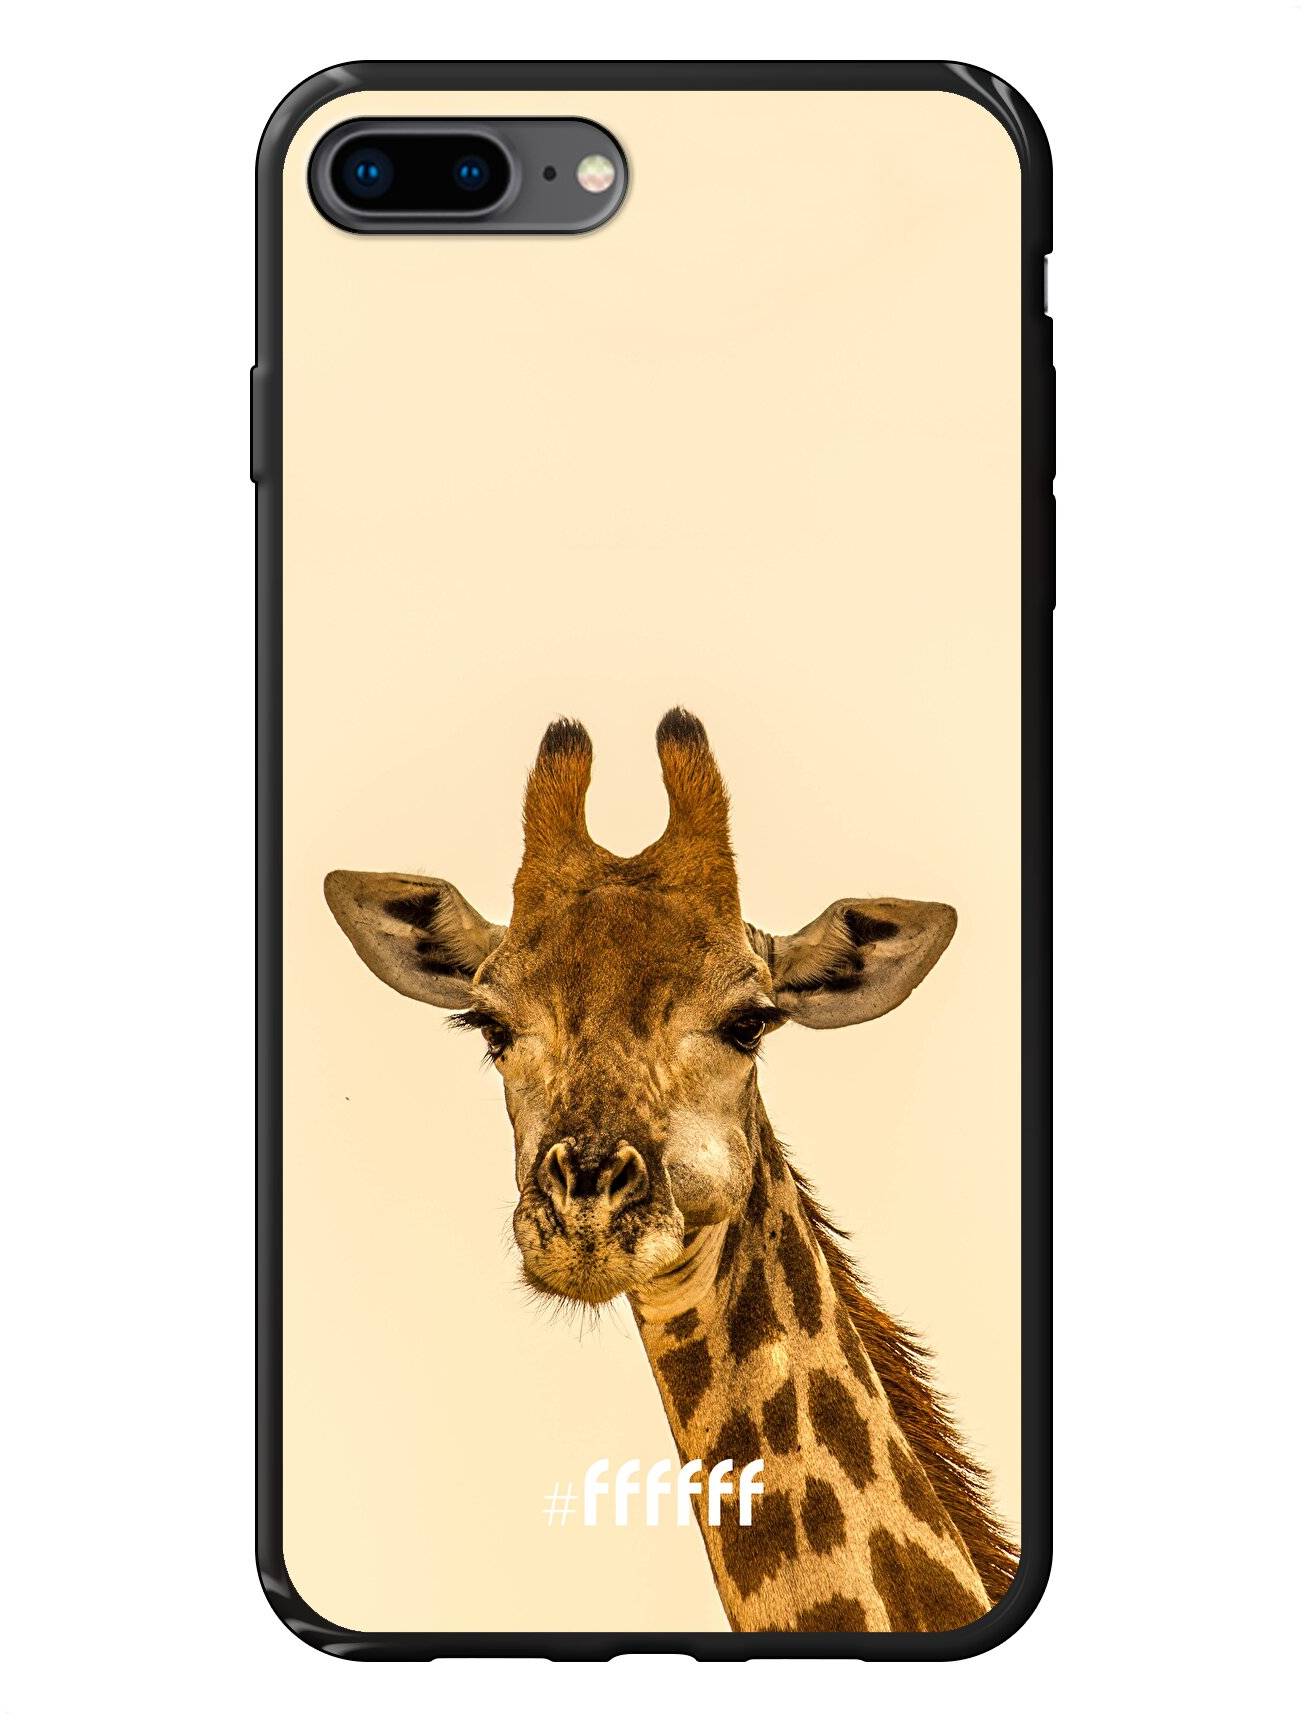 Giraffe iPhone 8 Plus